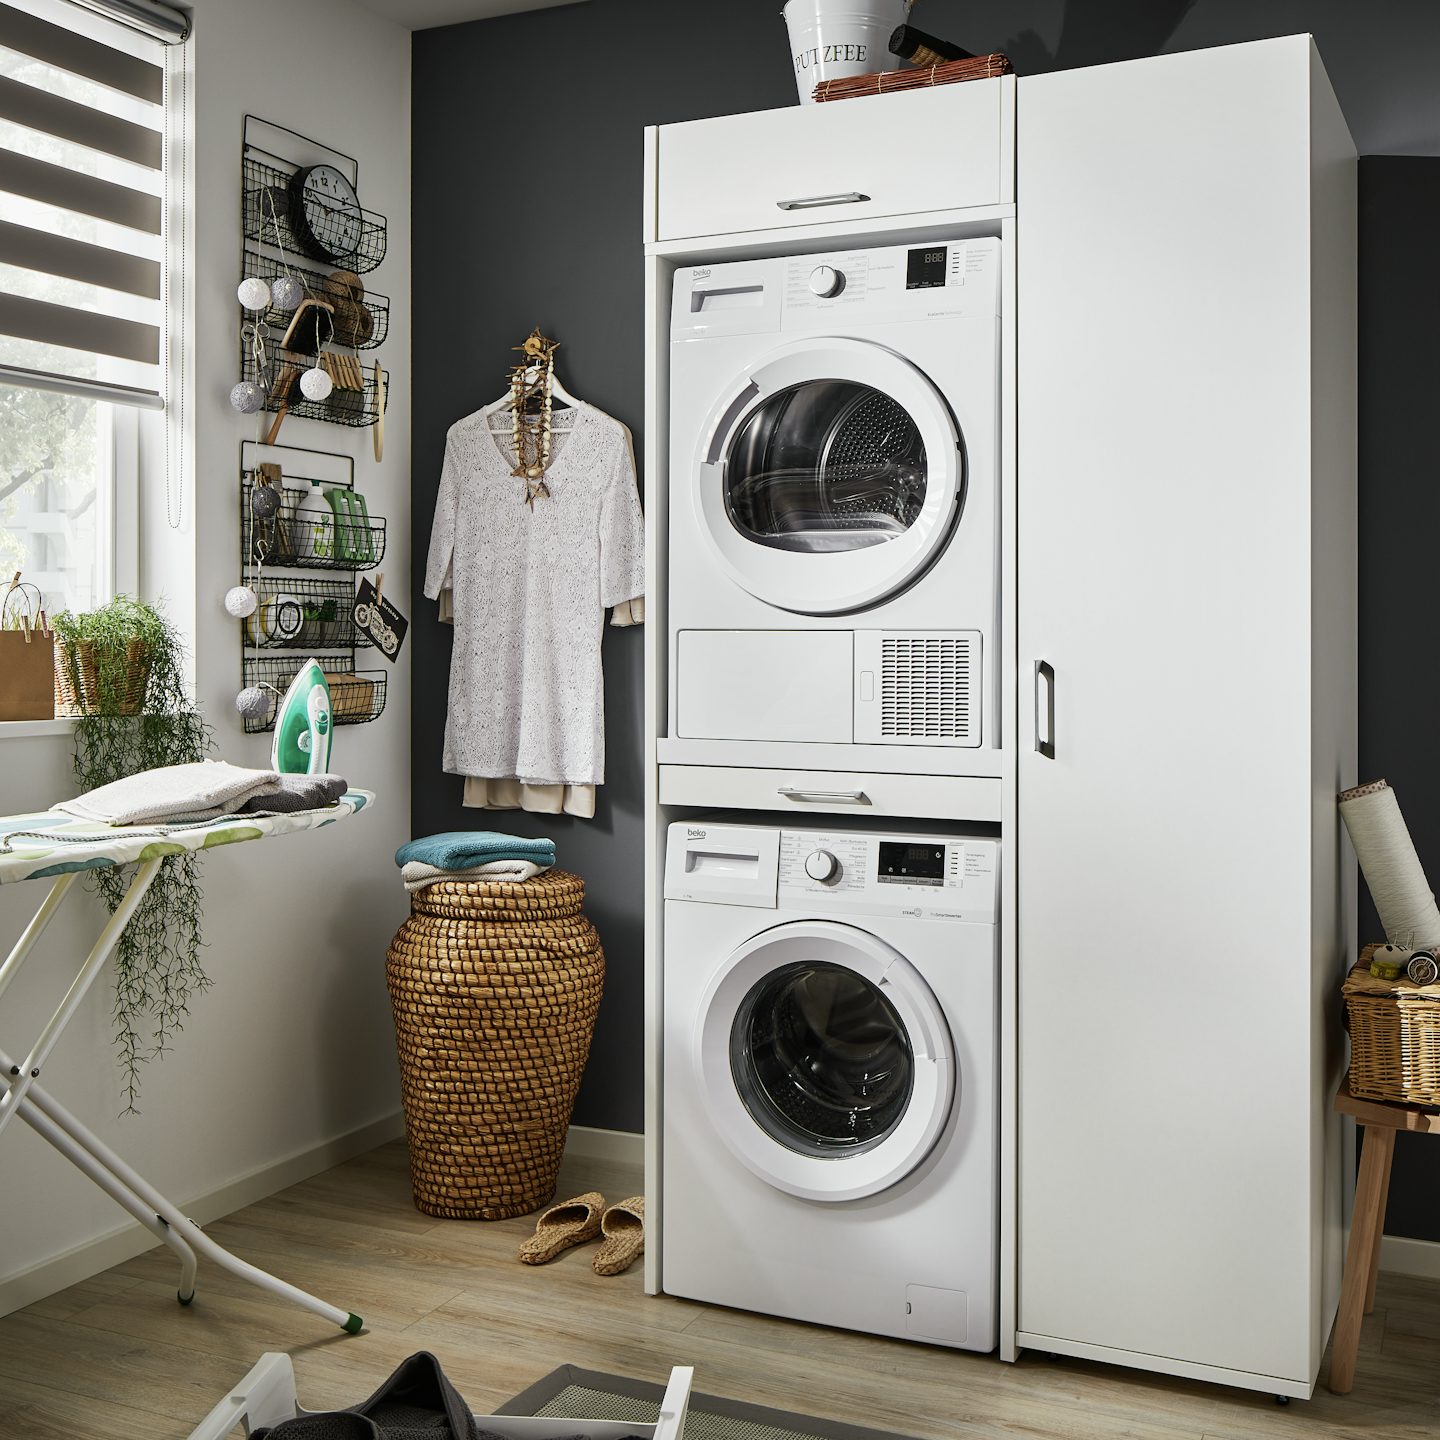 dubbele wasruimte kast in het wit met droger en wasmachine op elkaar gestapeld in de bijkeuken en wasruimte met hoge opbergkast ernaast die je op verschillende manier kan inrichten inspiratie idee